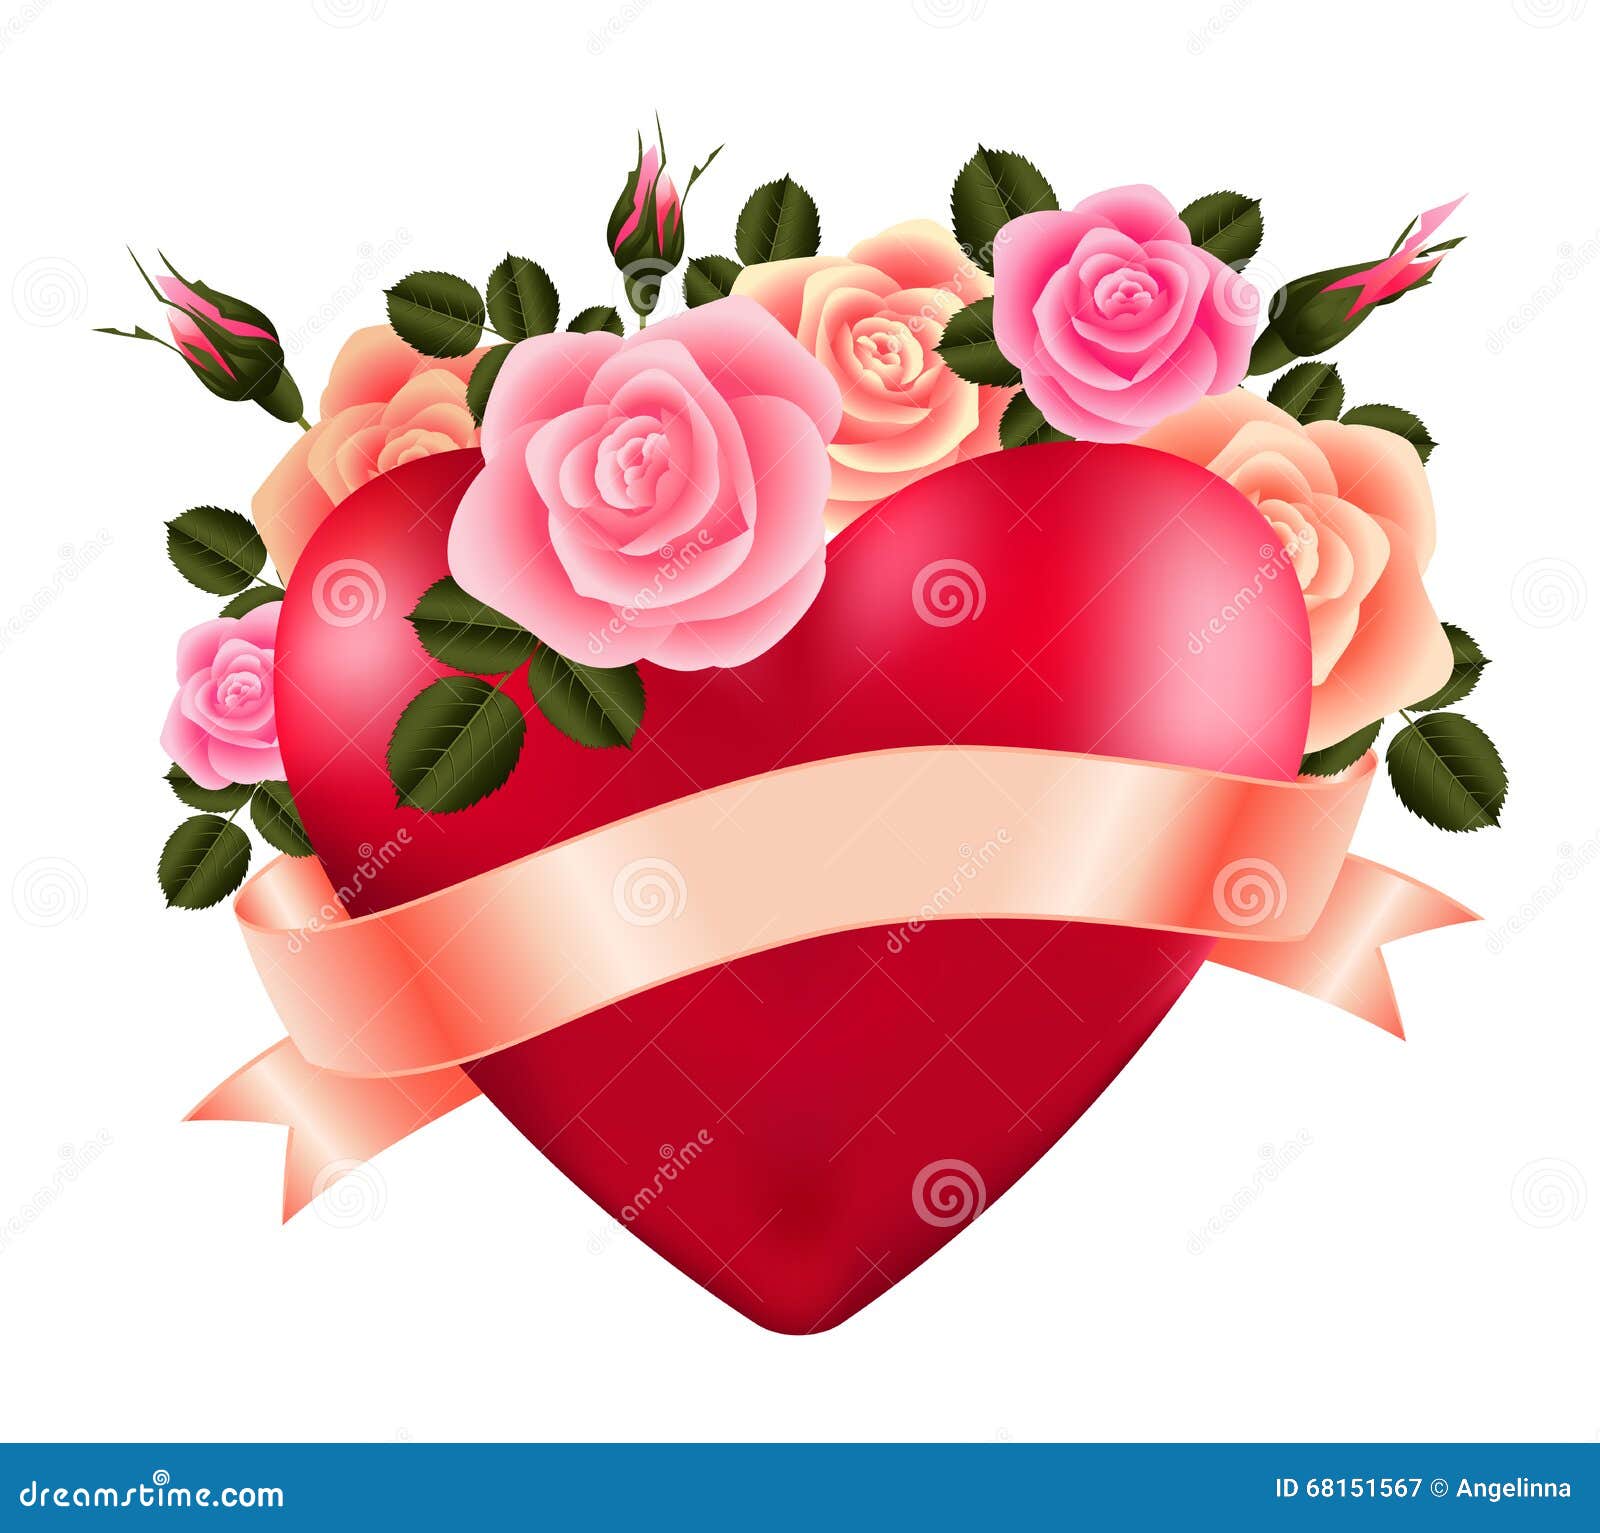 Herz Mit Rosen Und Band Vektor Abbildung Illustration Von Pink